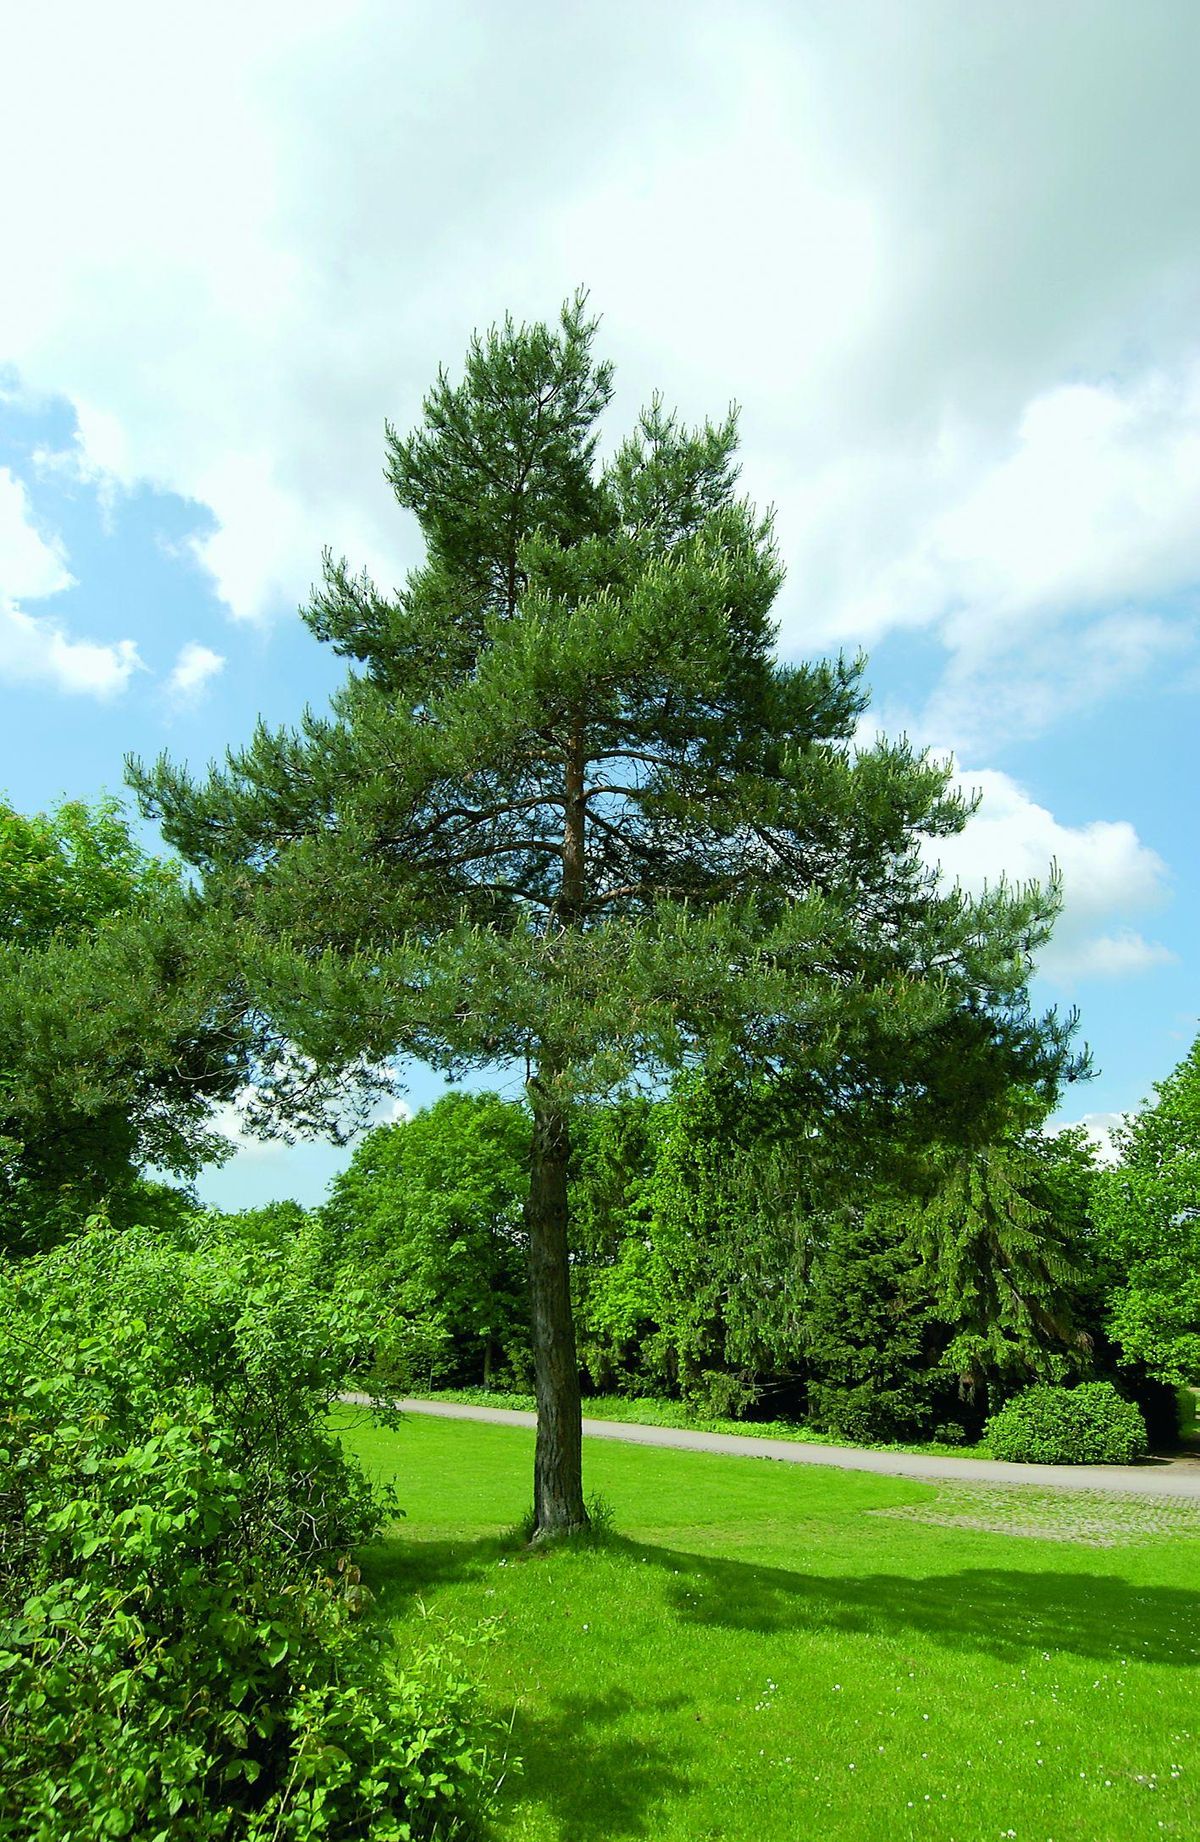 Arbre nuage Pinus sylvestris Norsky taille 120/130 caisse bois 70x70